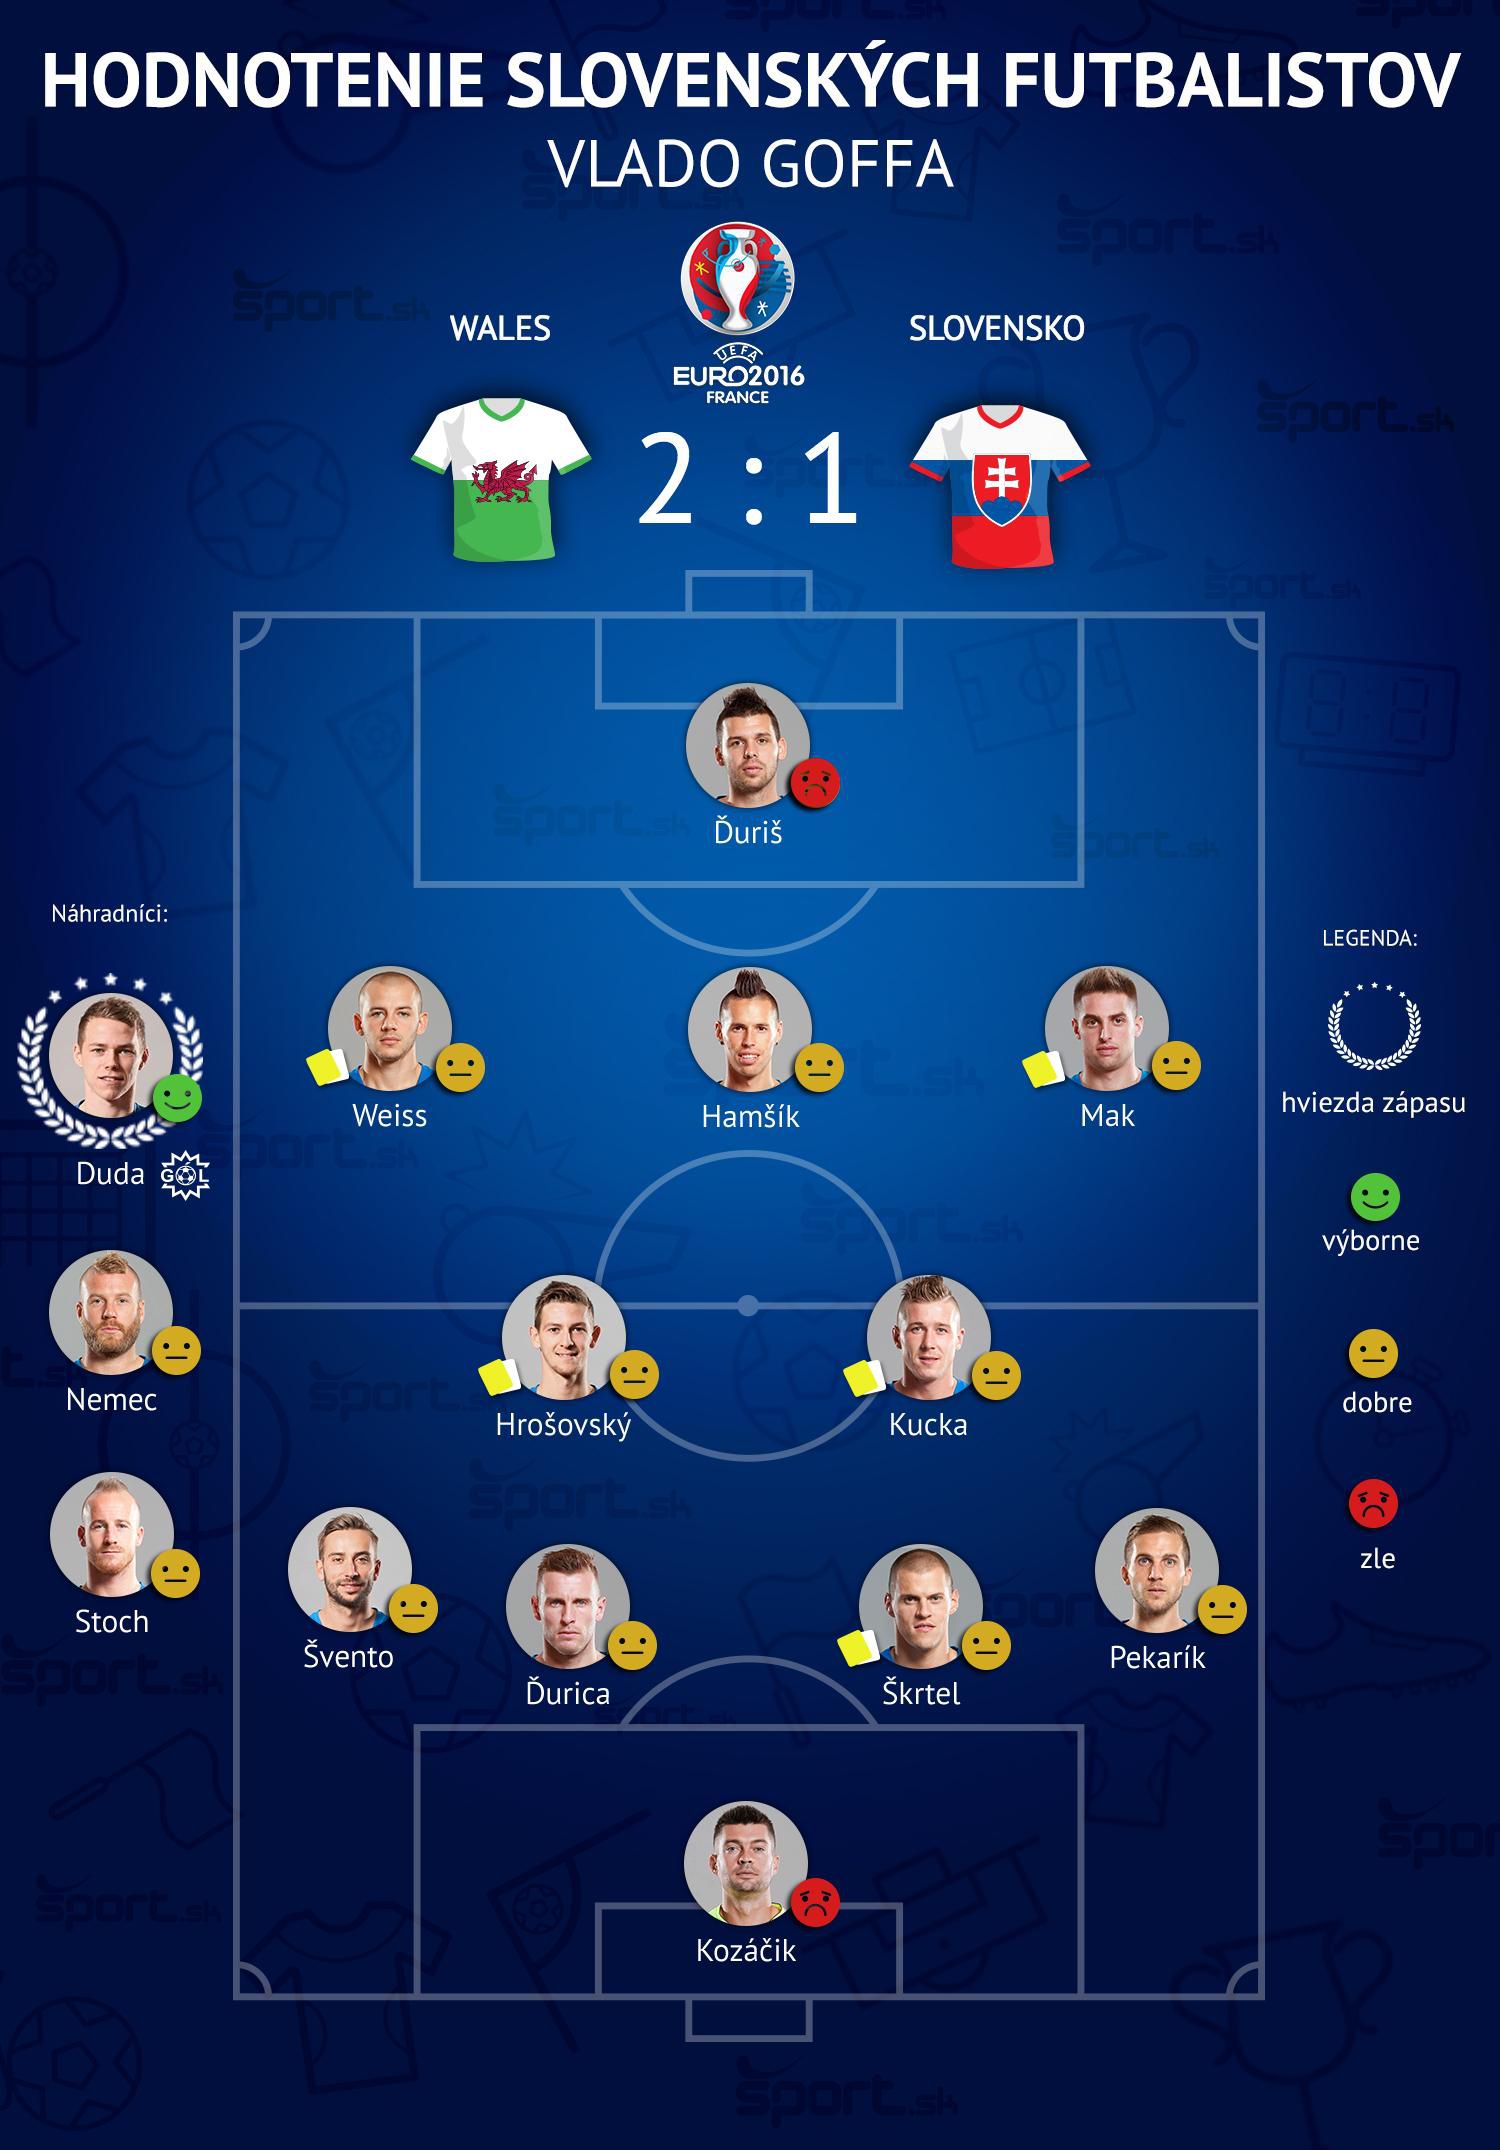 Slovensko, hraci, hodnotenie, vs. Wales, Vlado Goffa, EURO 2016